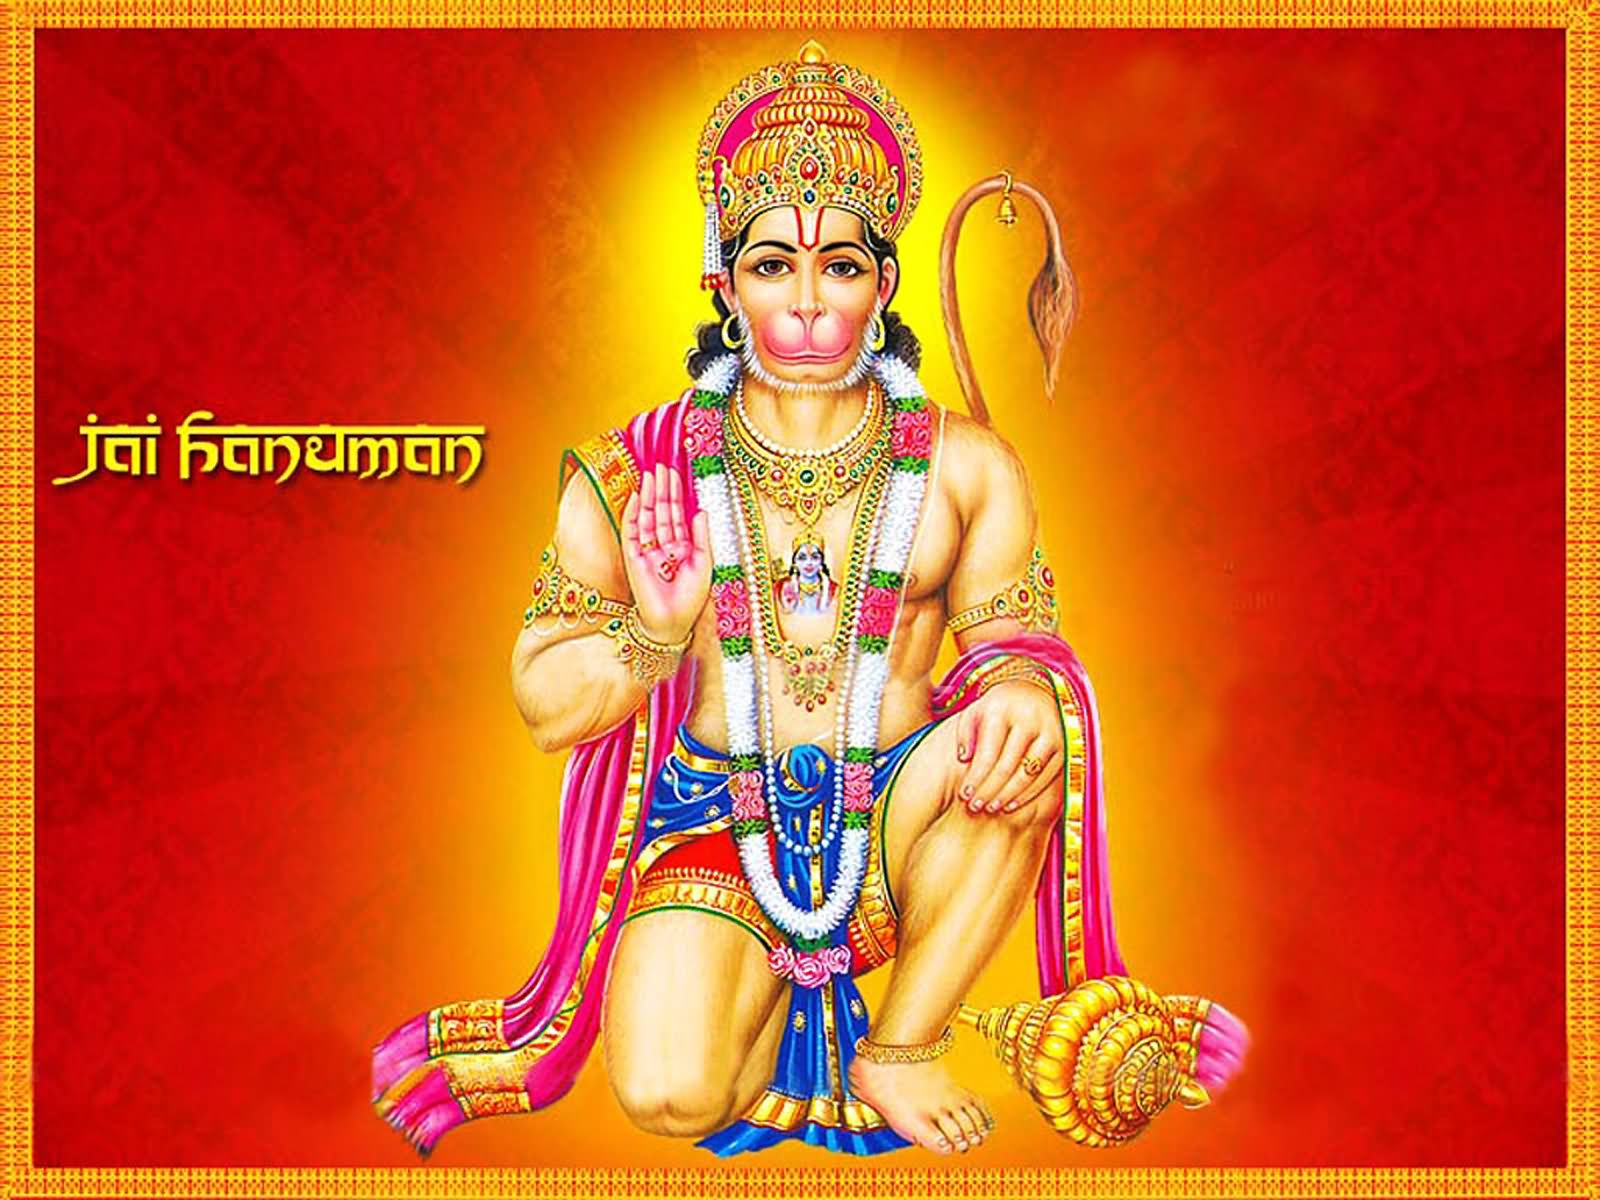 Jai Hanuman Happy Hanuman Jayanti